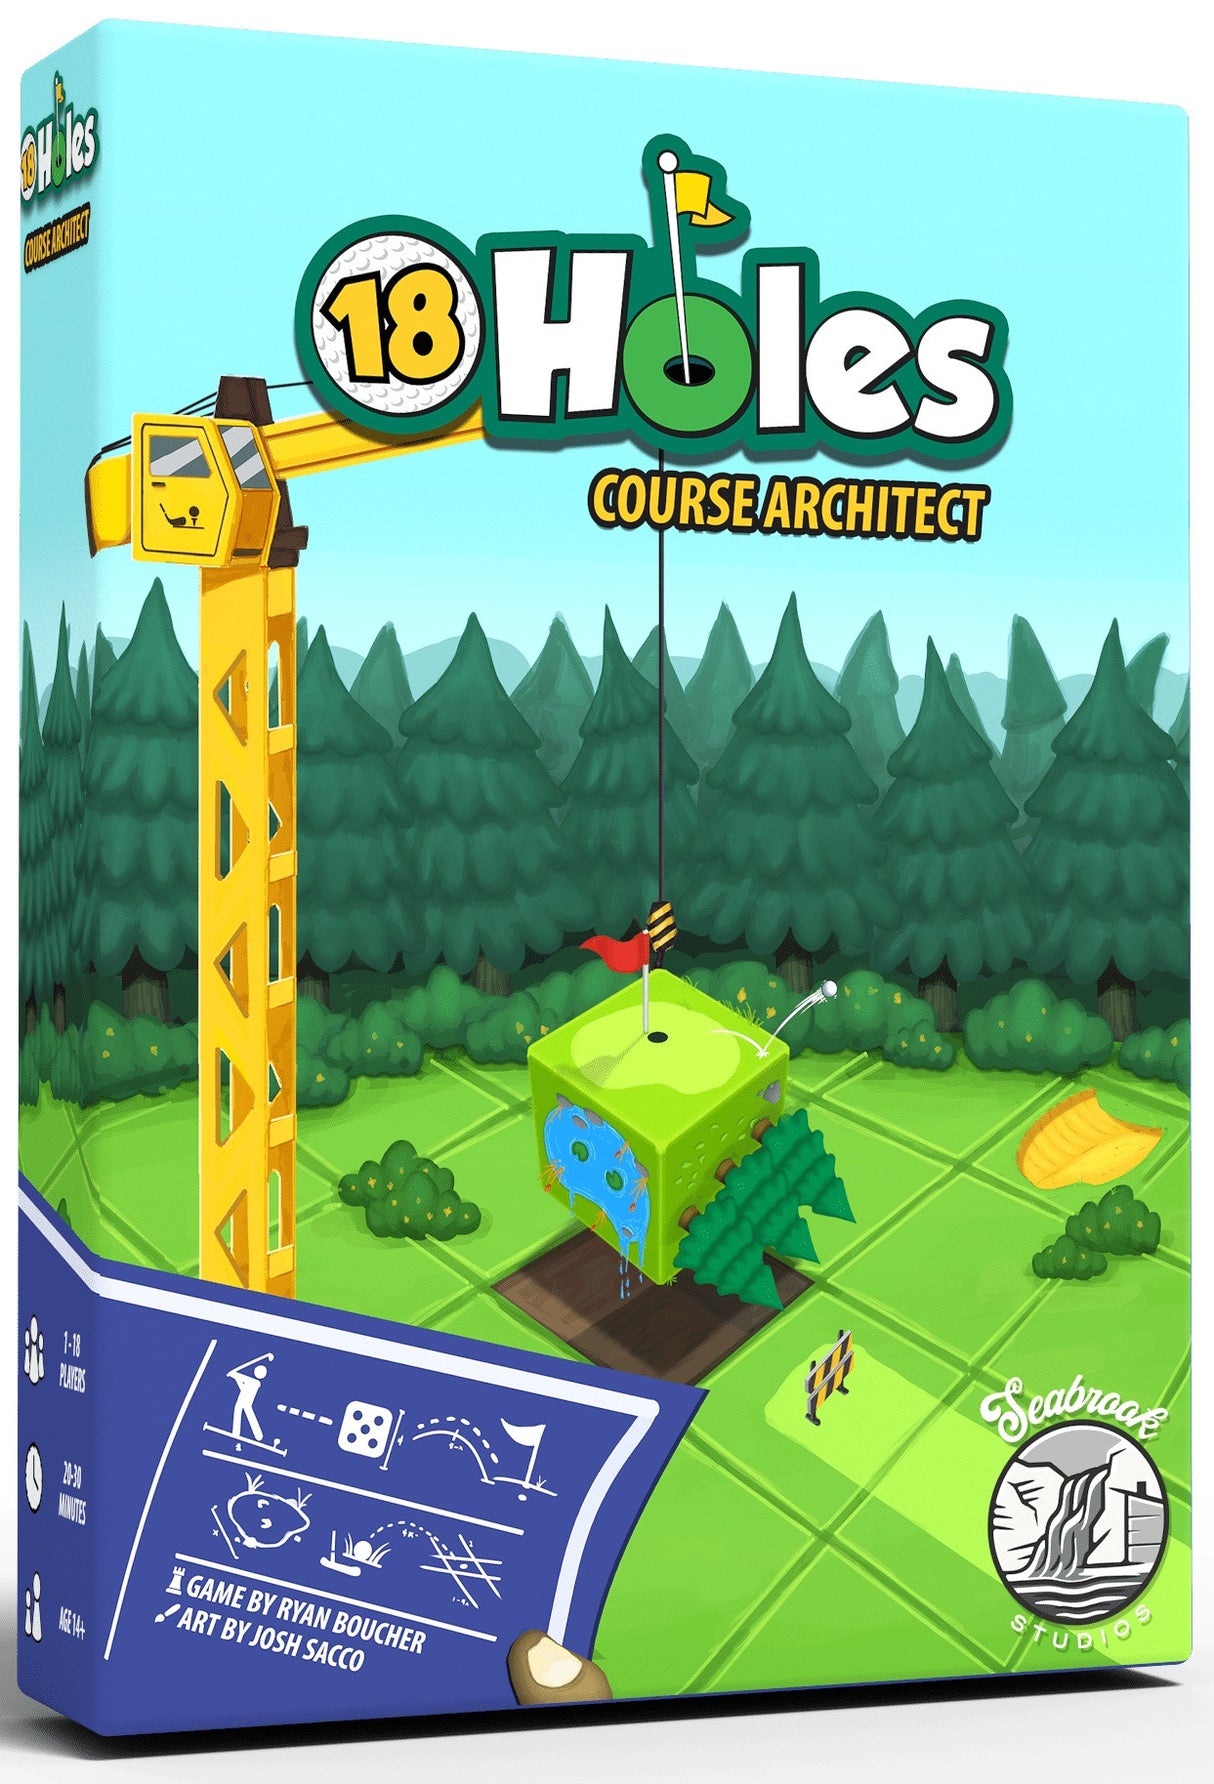 18 Holes Course Architect